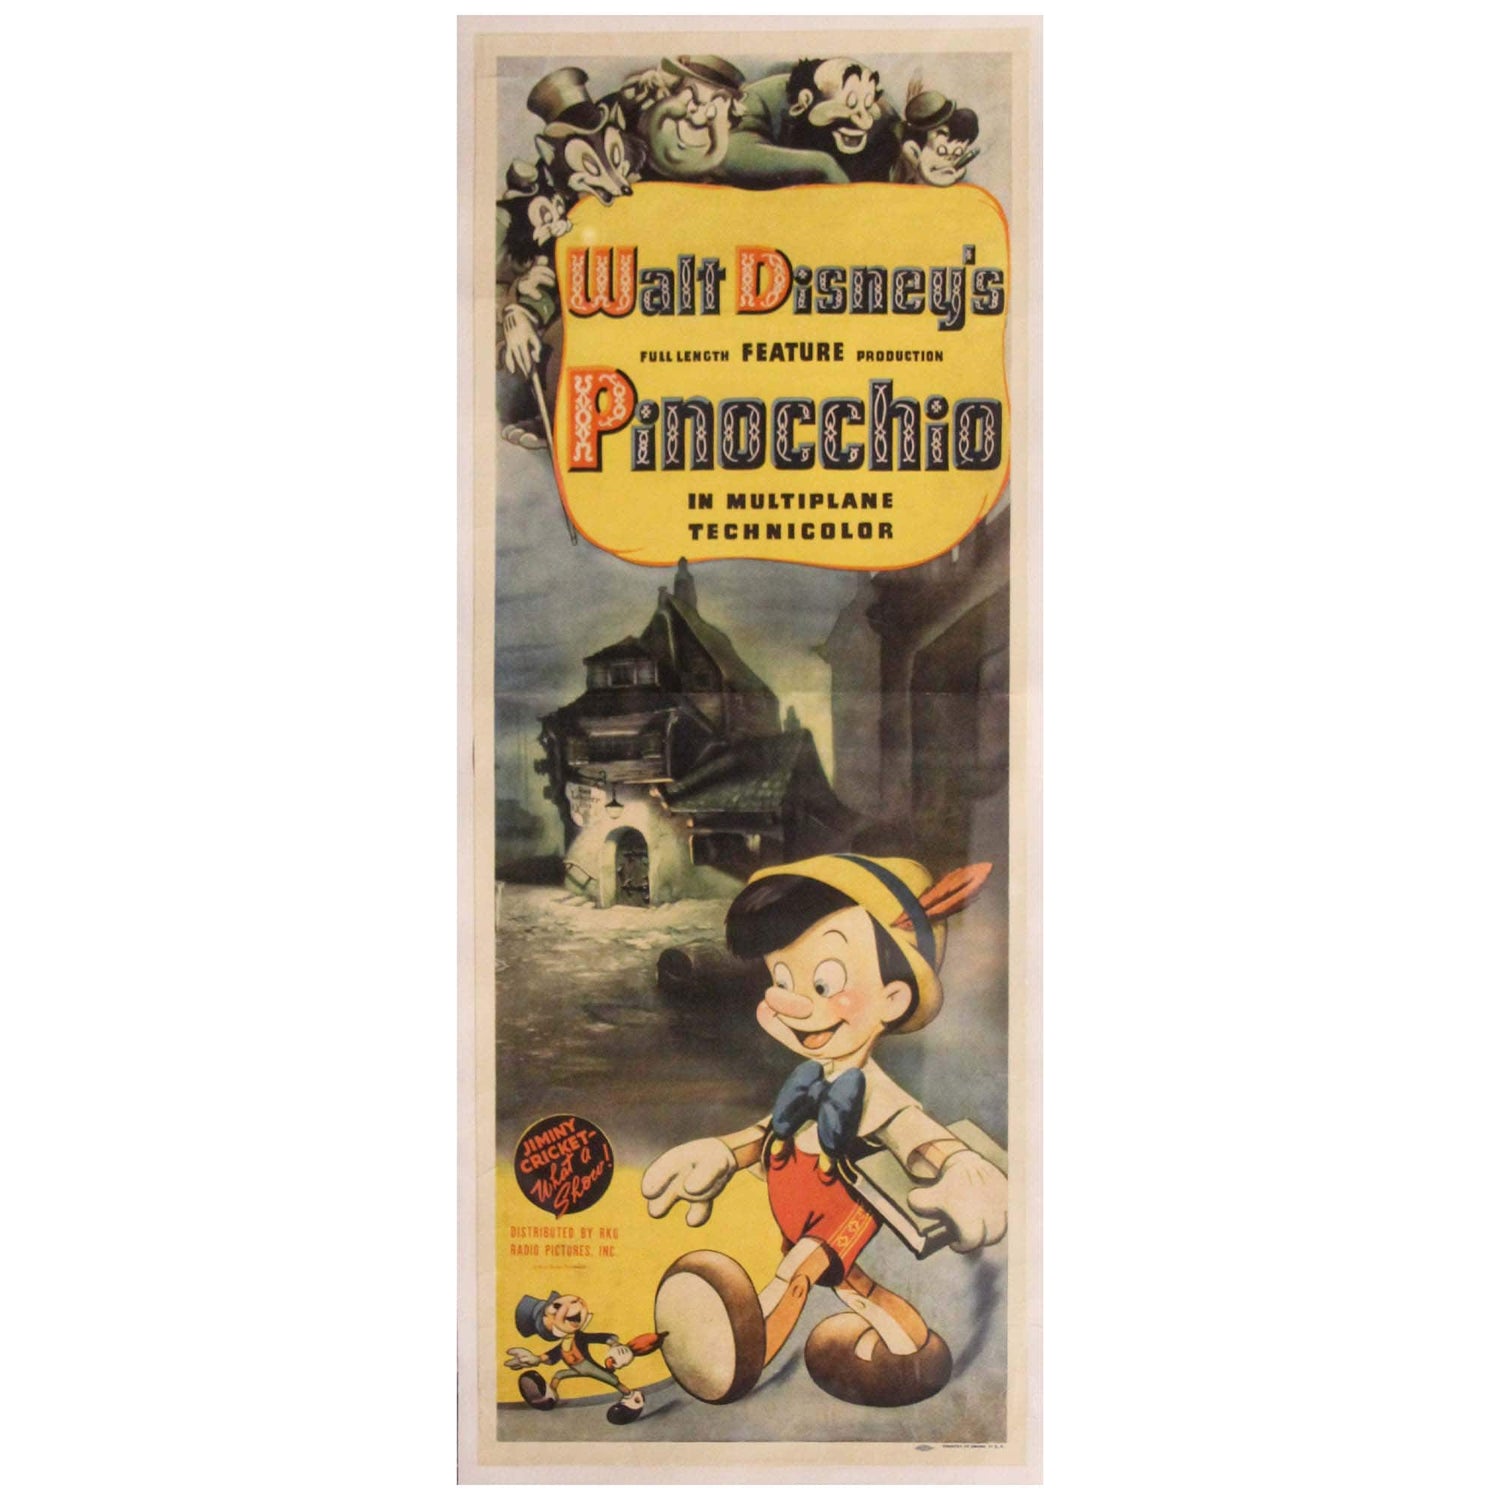 Disneys: Pinocchio Promo Poster 2